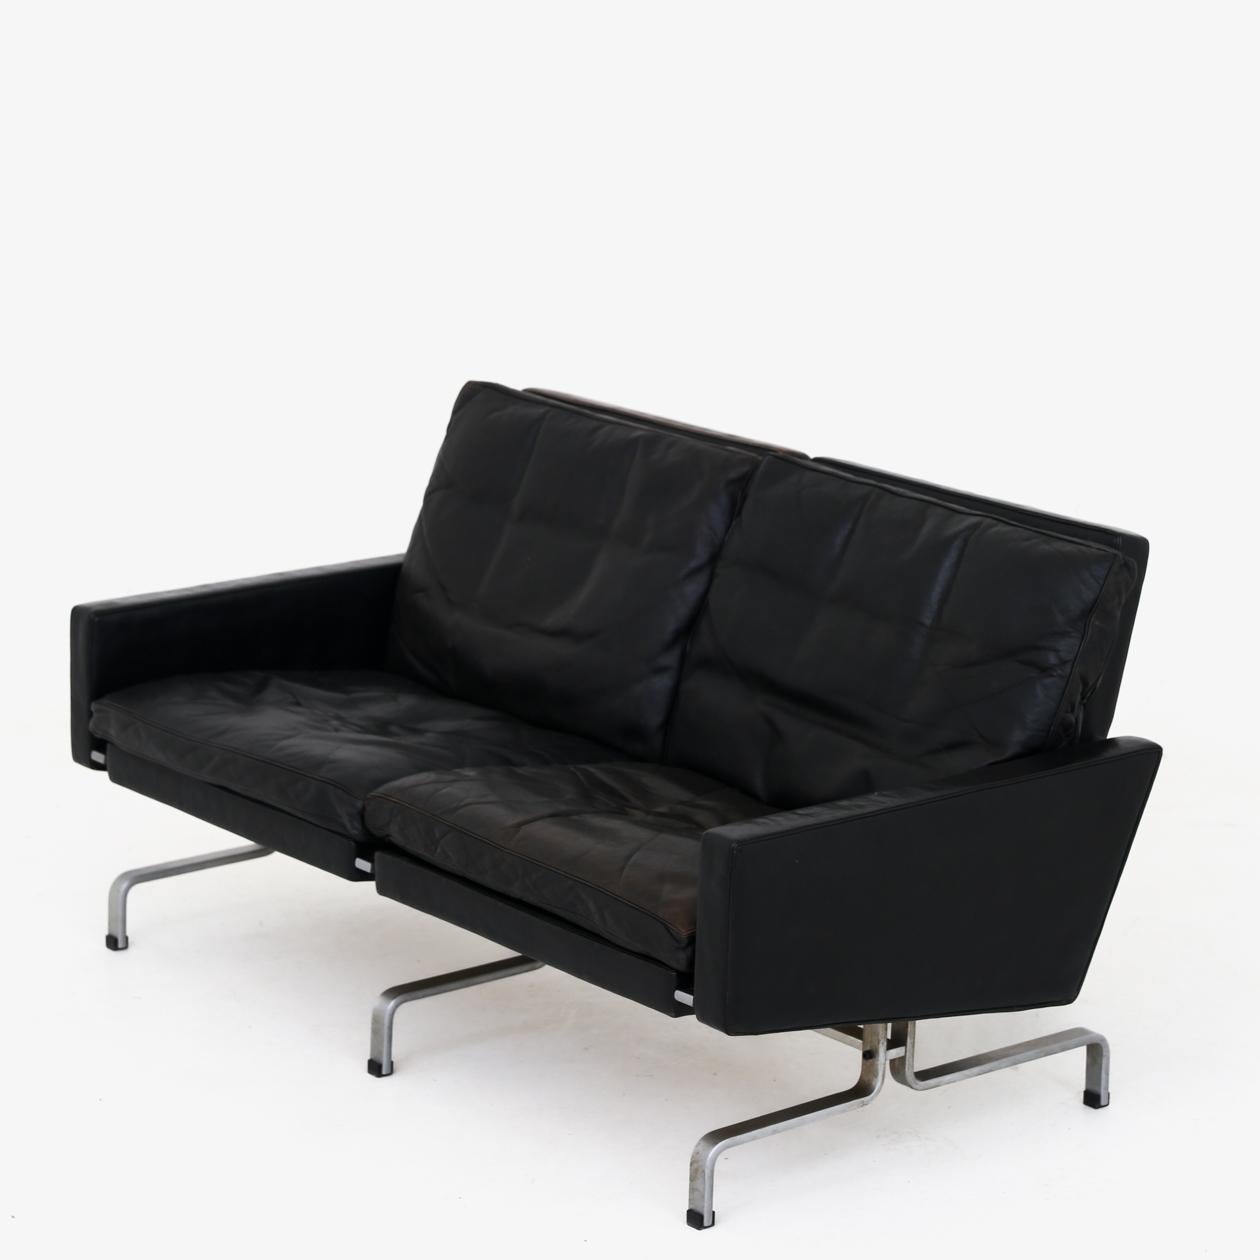 PK 31/2 - 2-seater sofa in original patinated black leather on matt chromed steel frame. Poul Kjærholm / E. Kold Christensen.